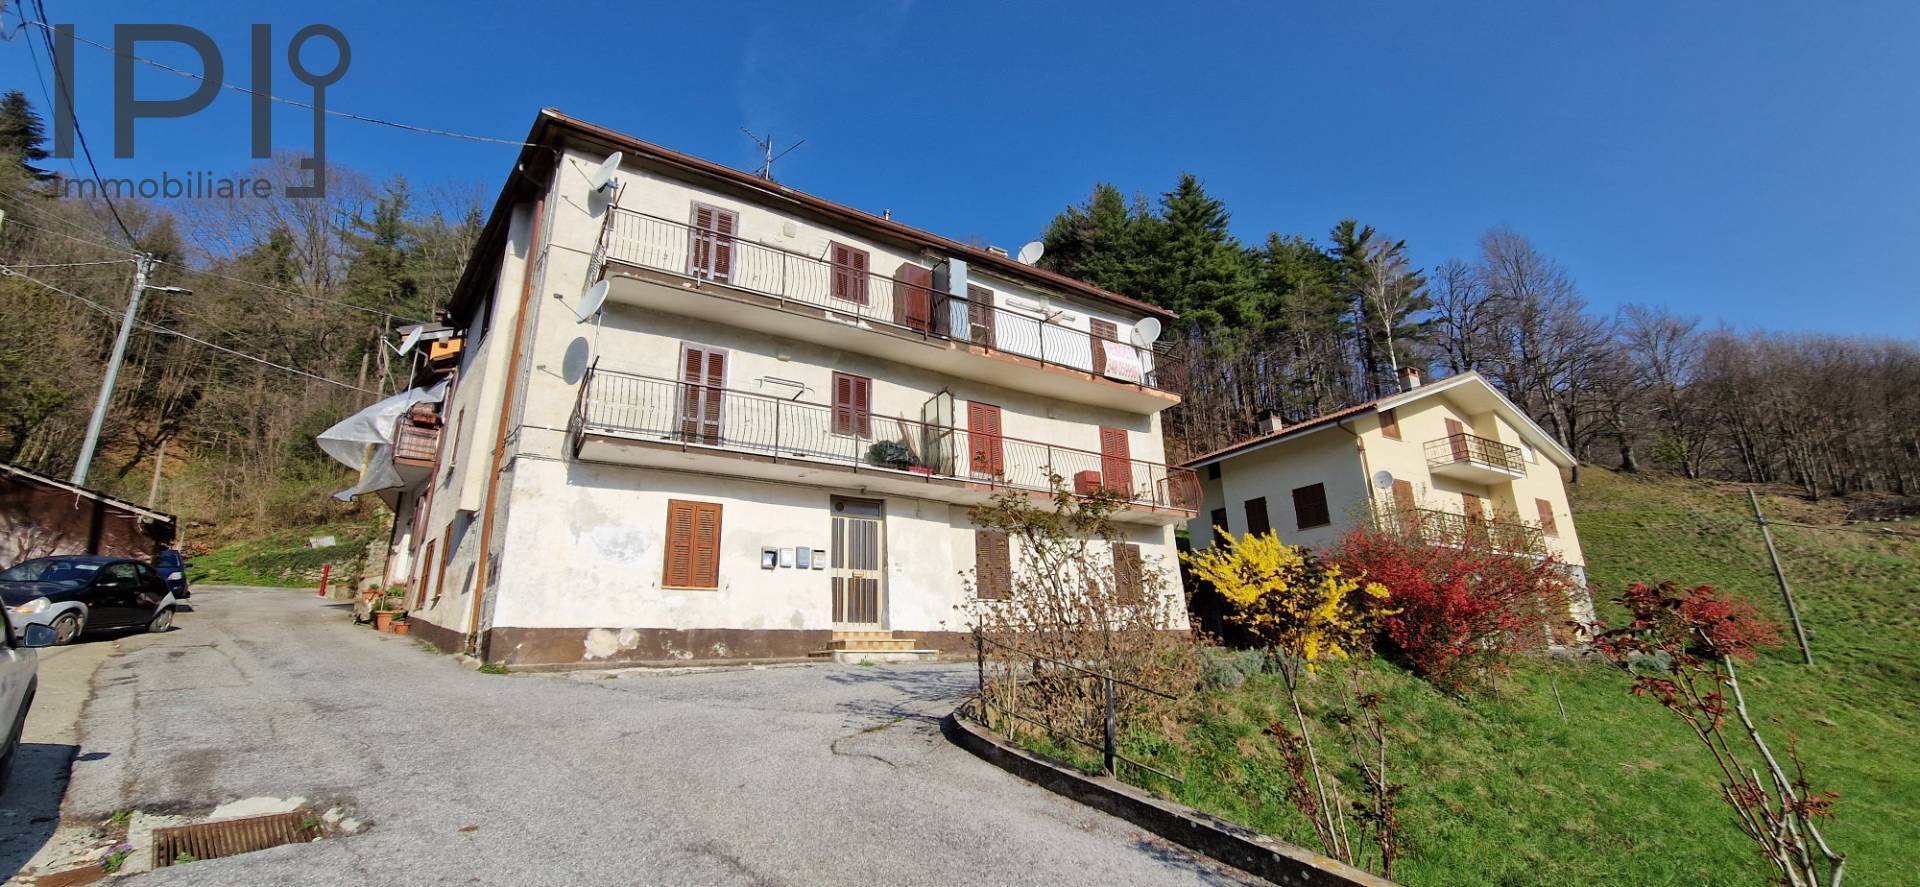 Appartamento in vendita a Osiglia, 2 locali, prezzo € 24.000 | PortaleAgenzieImmobiliari.it